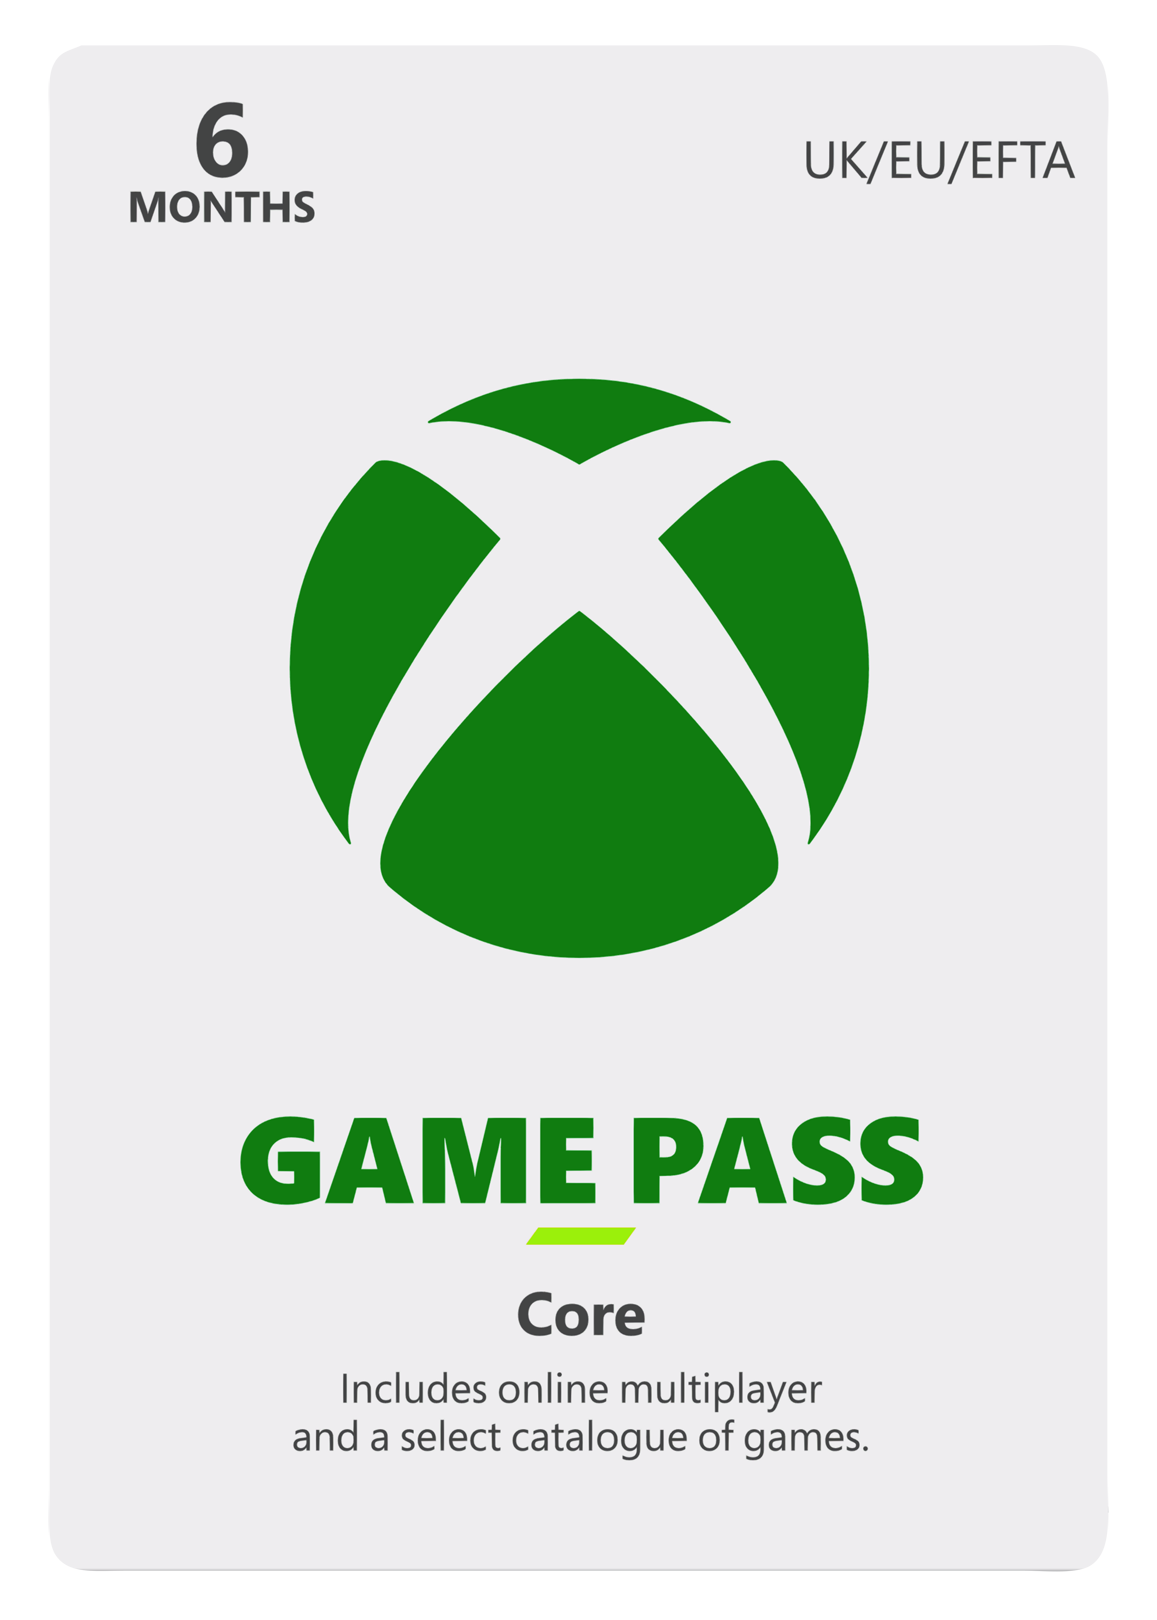 xbox game pass core 6 maanden